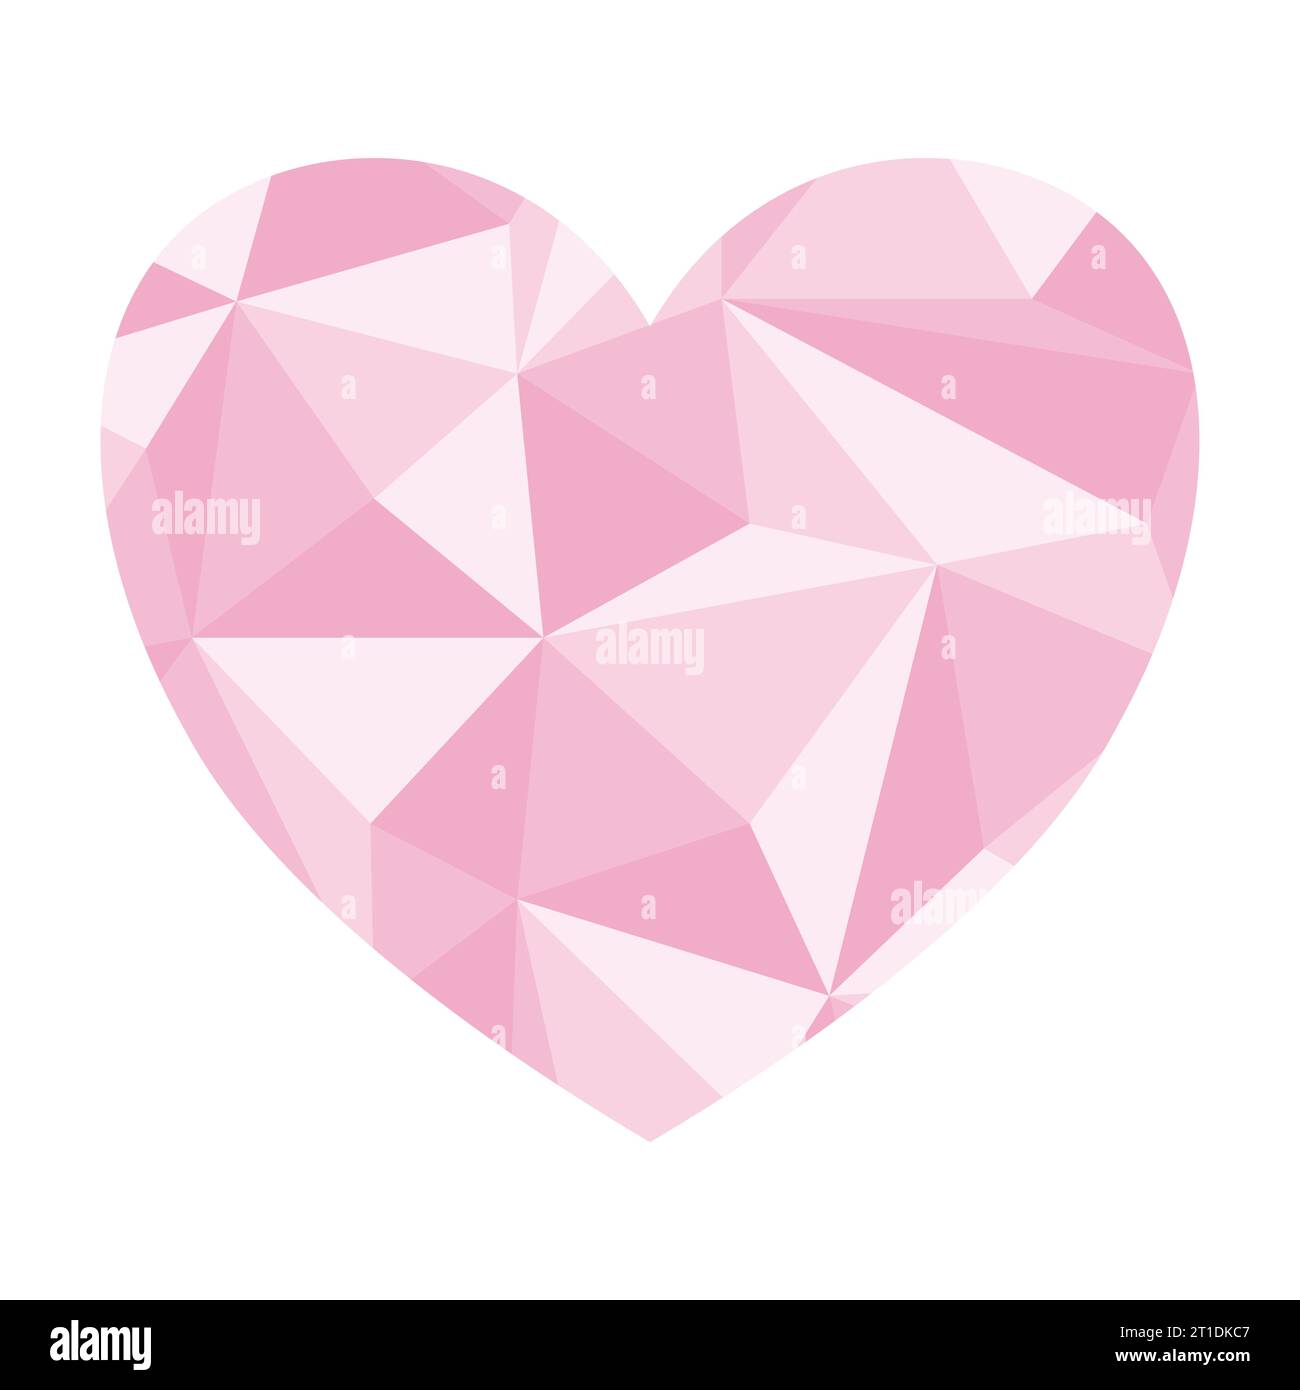 Herz-Silhouette mit abstraktem rosa geometrischem nahtlosem Muster mit Dreiecken, Vektor-Illustration Stock Vektor